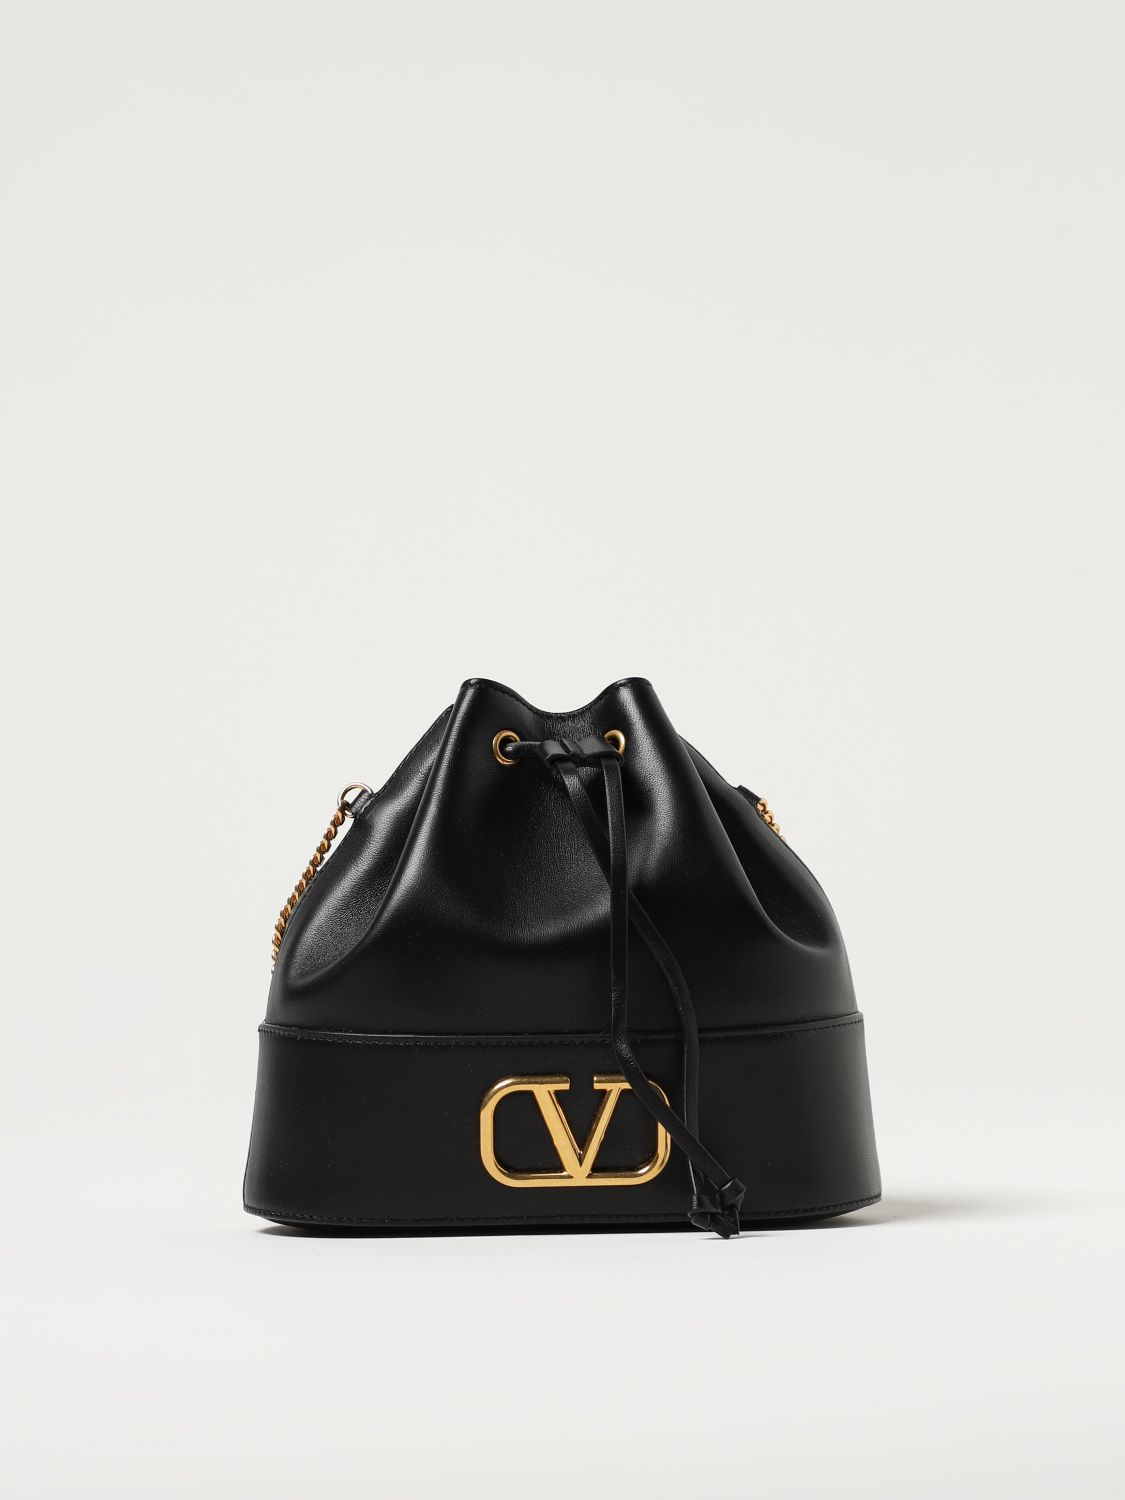 valentino small bag